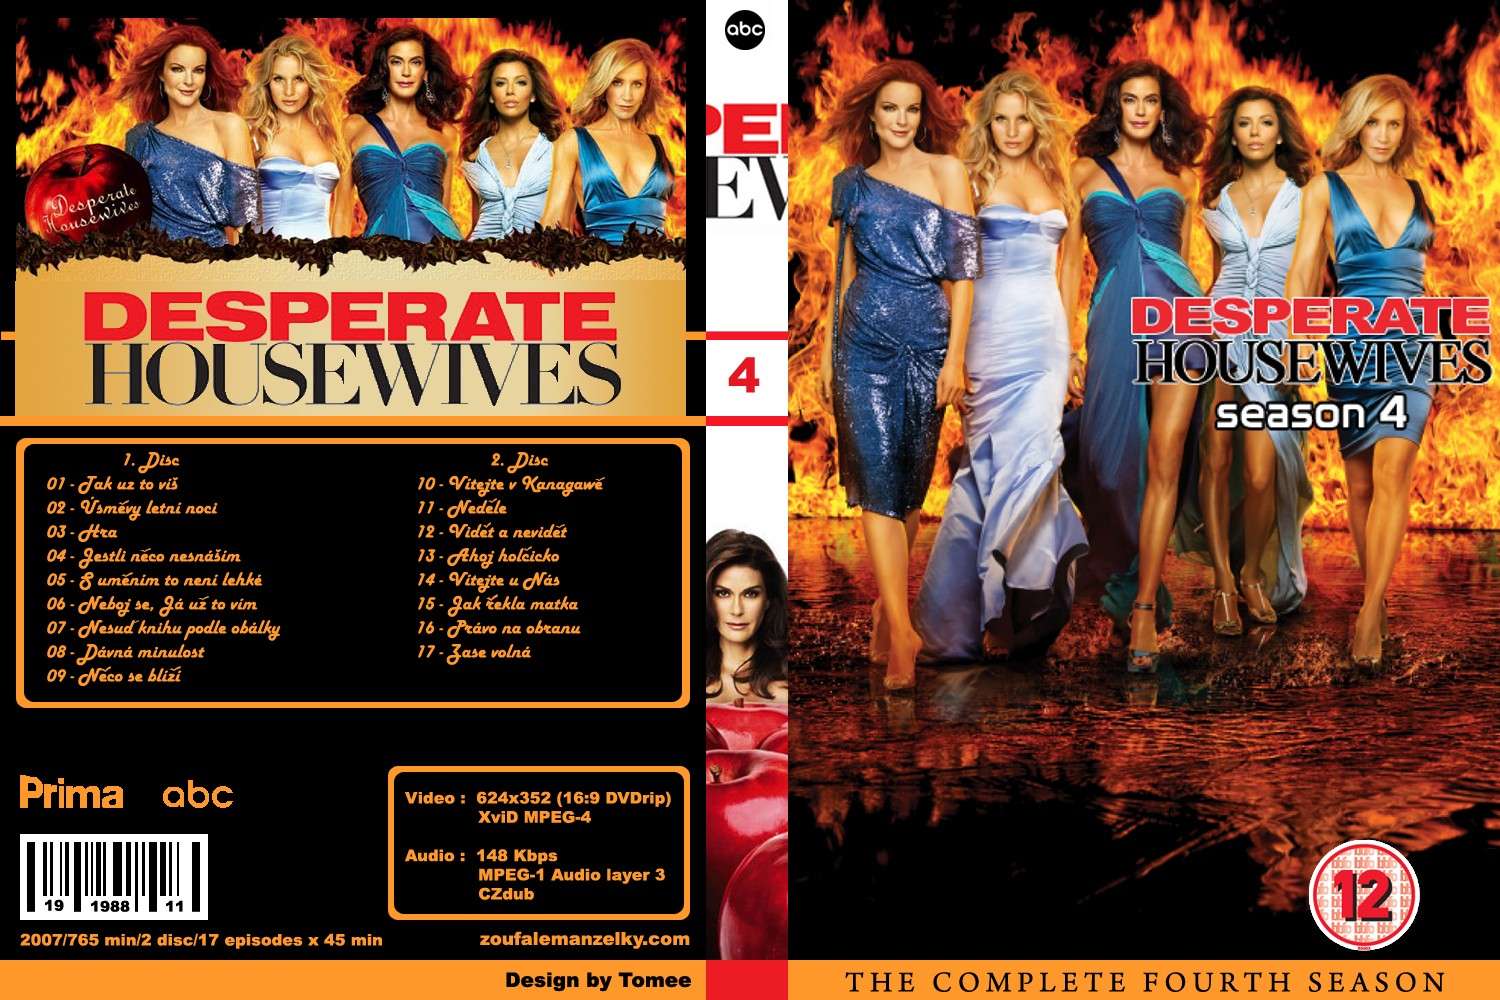 الموسم الرابع من مسلسل Desperate Housewives  season 4 كامل ومترجم وبنسخ DVD RIB وعلي سيرفر اسرع من الميديا فاير Desper12